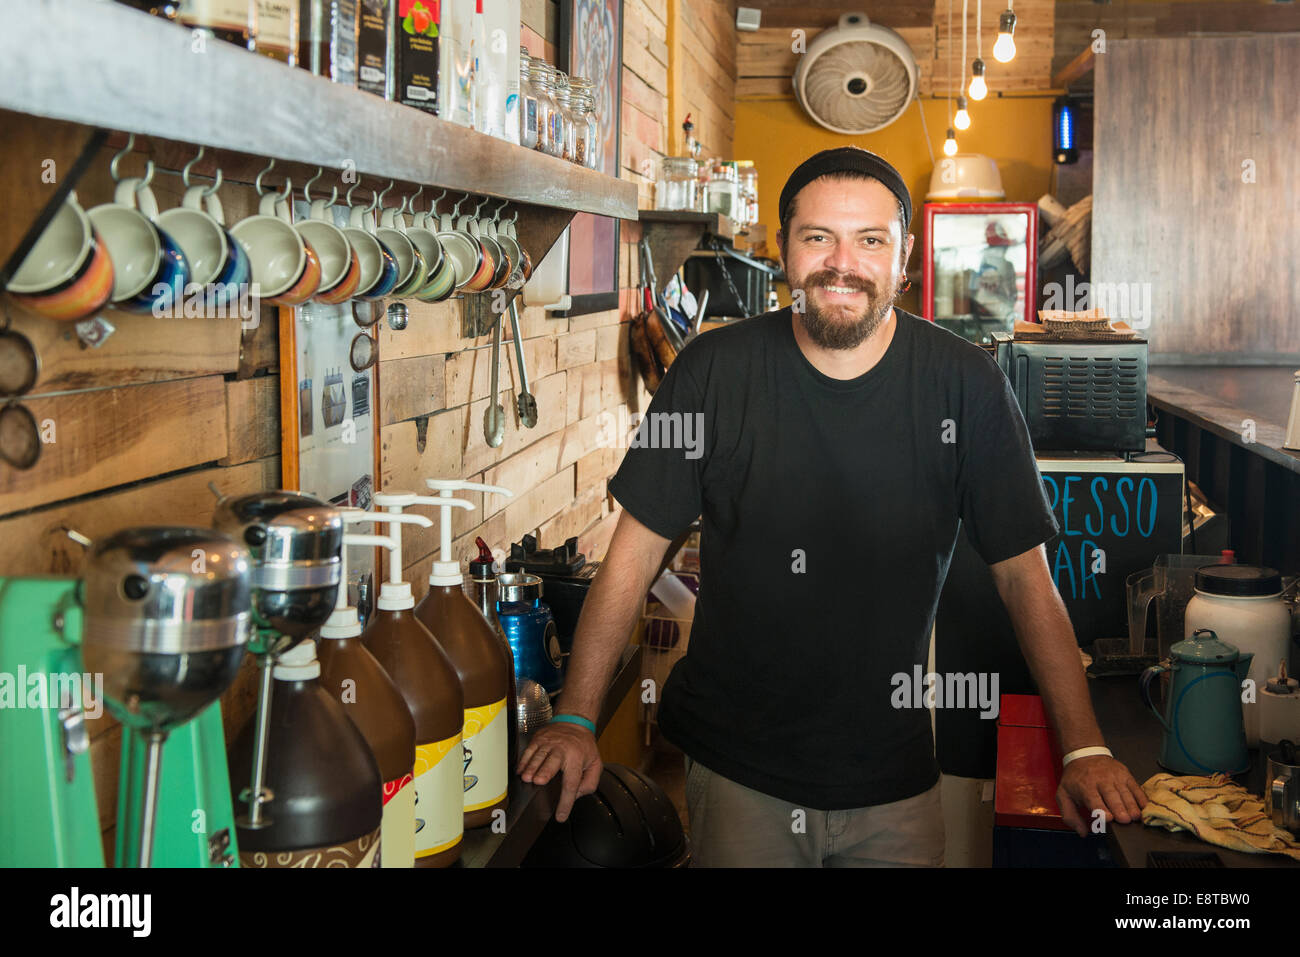 Hispanic man working in coffee shop Stock Photo